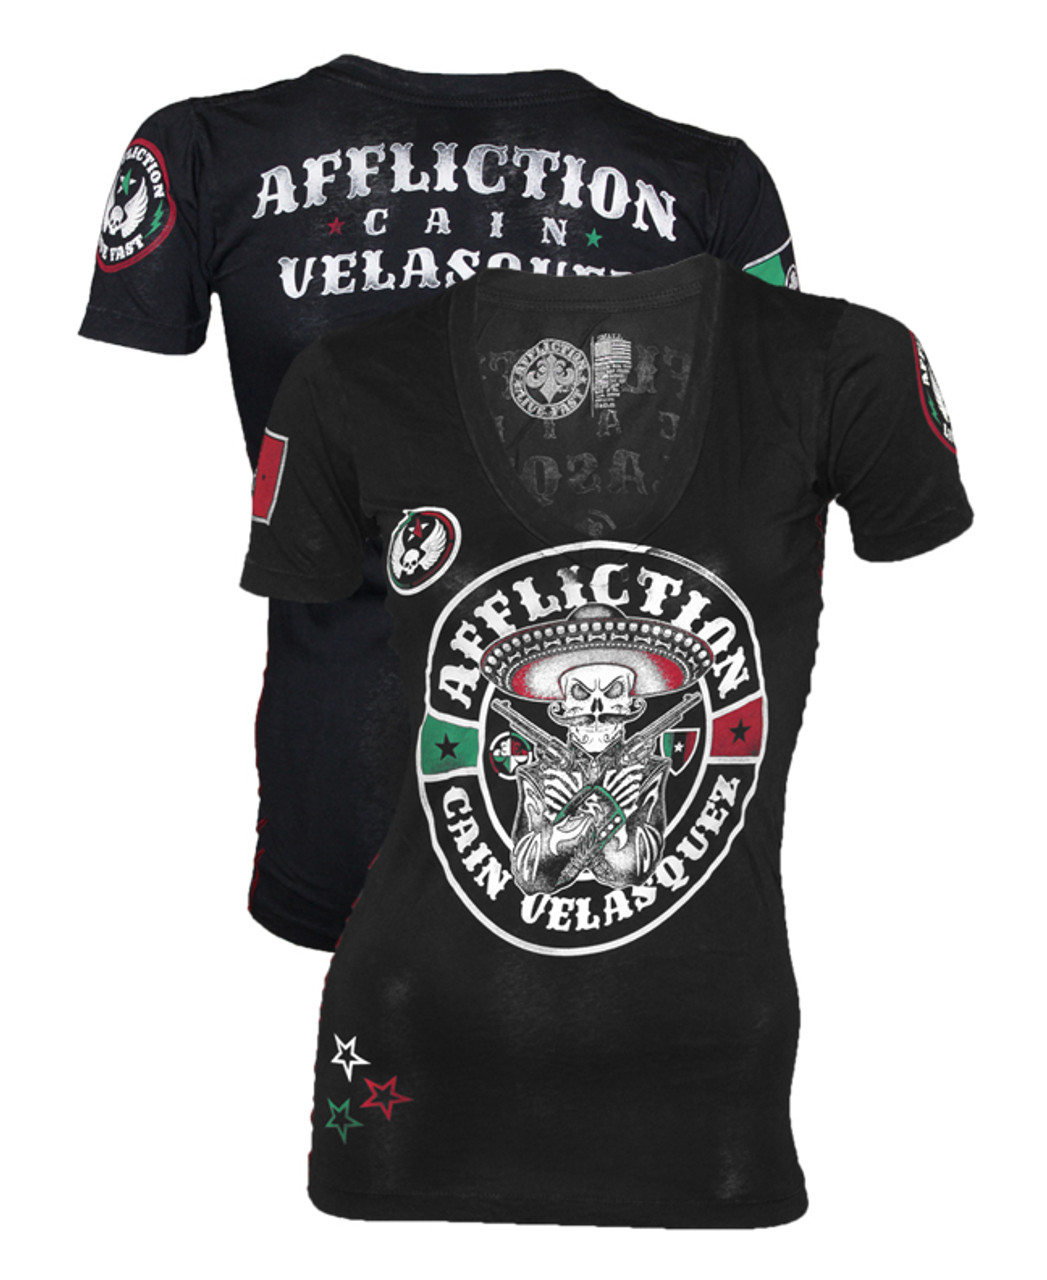 Affliction Cain velasquez UFC 166 Women's Shirt Outlet unique